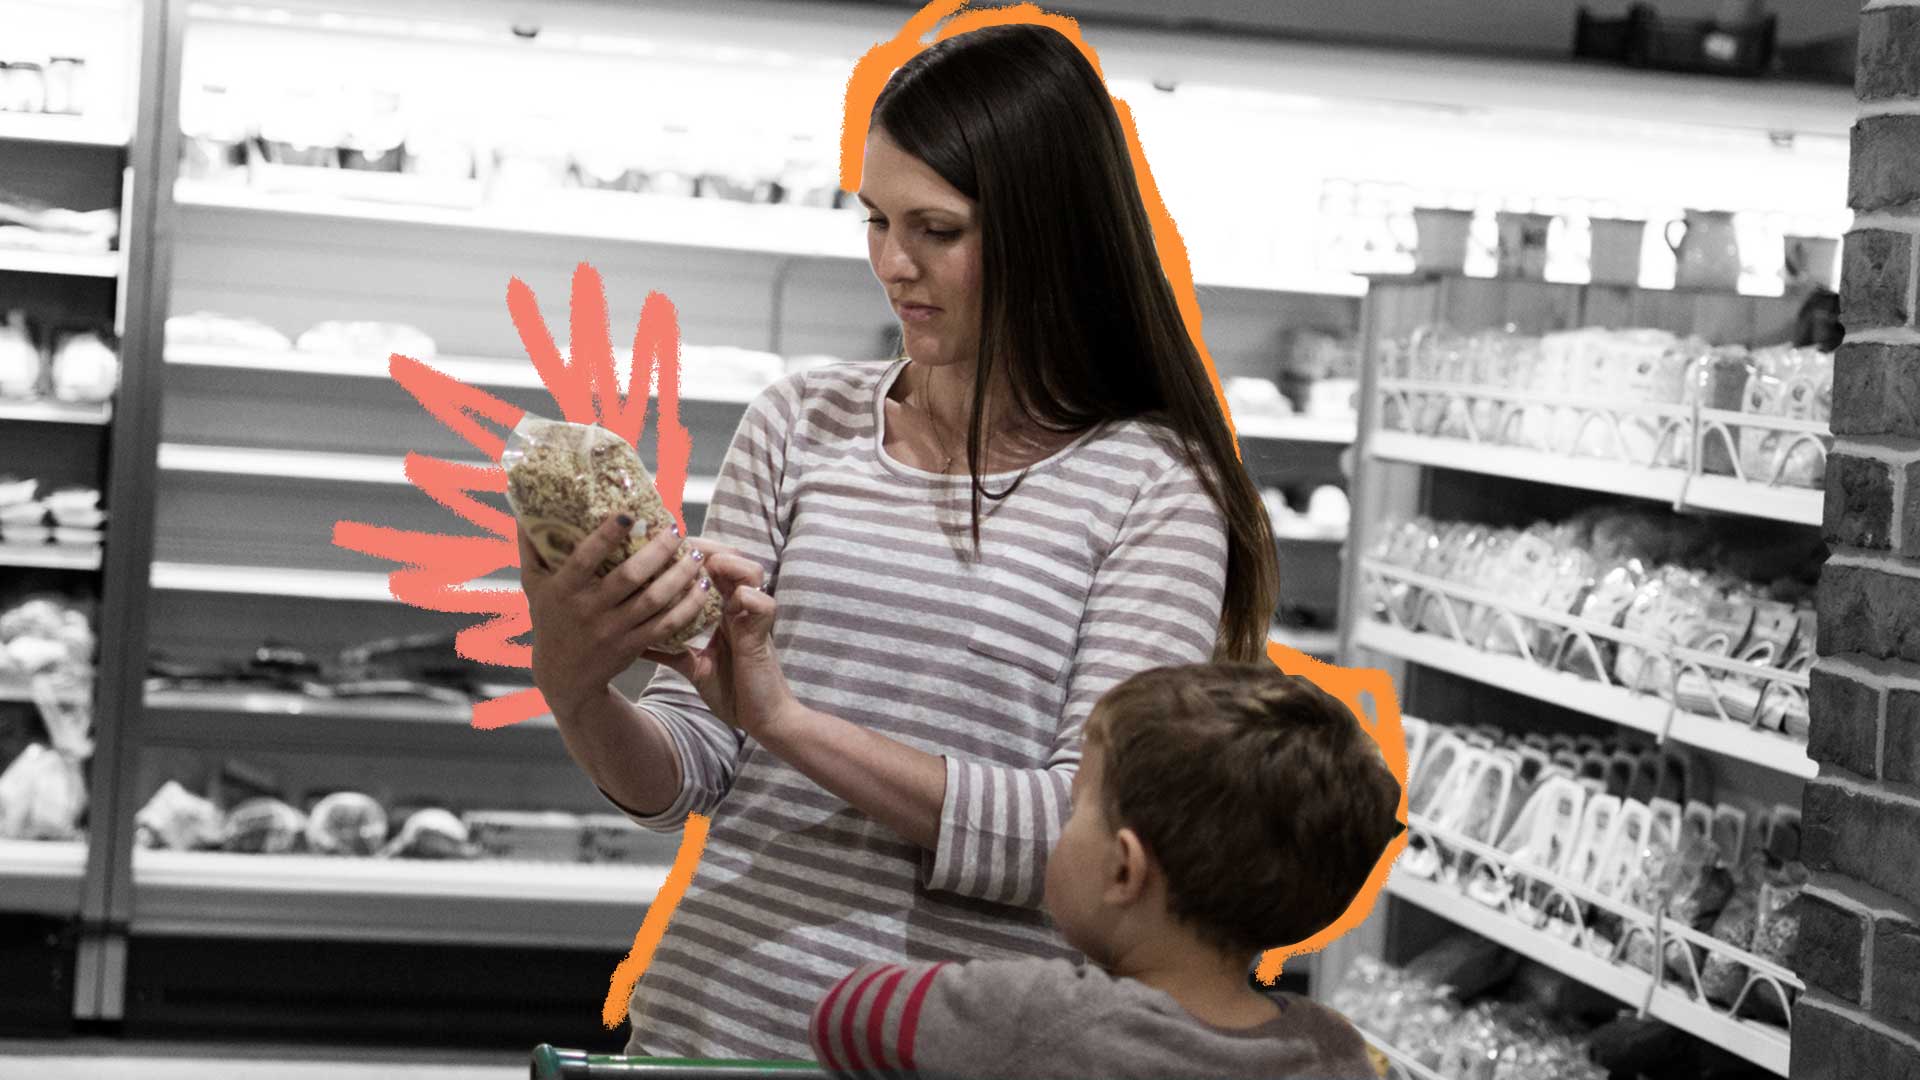 Põe no Rótulo: foto de um supermercado, em que uma mulher lê o rótulo de um produto enquanto uma criança a observa.